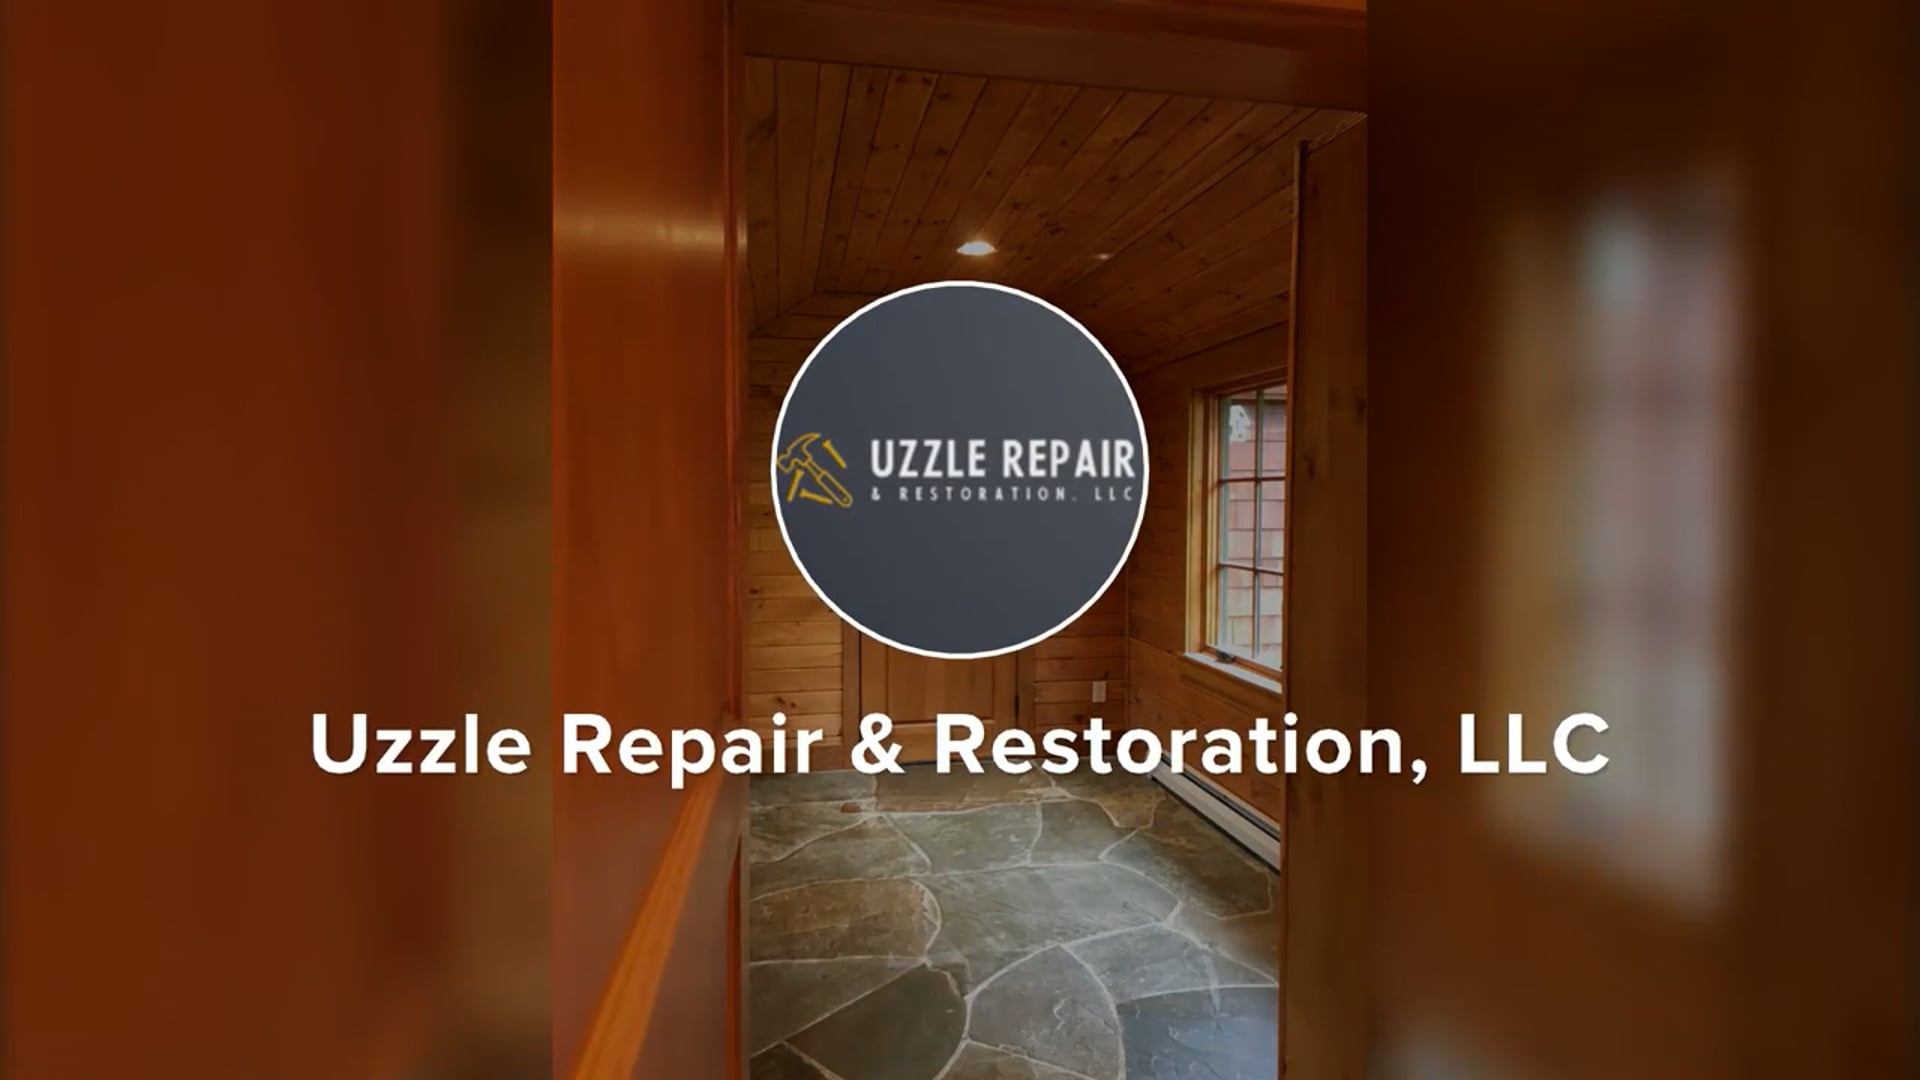 City of Oaks Home Repair and Restoration, LLC